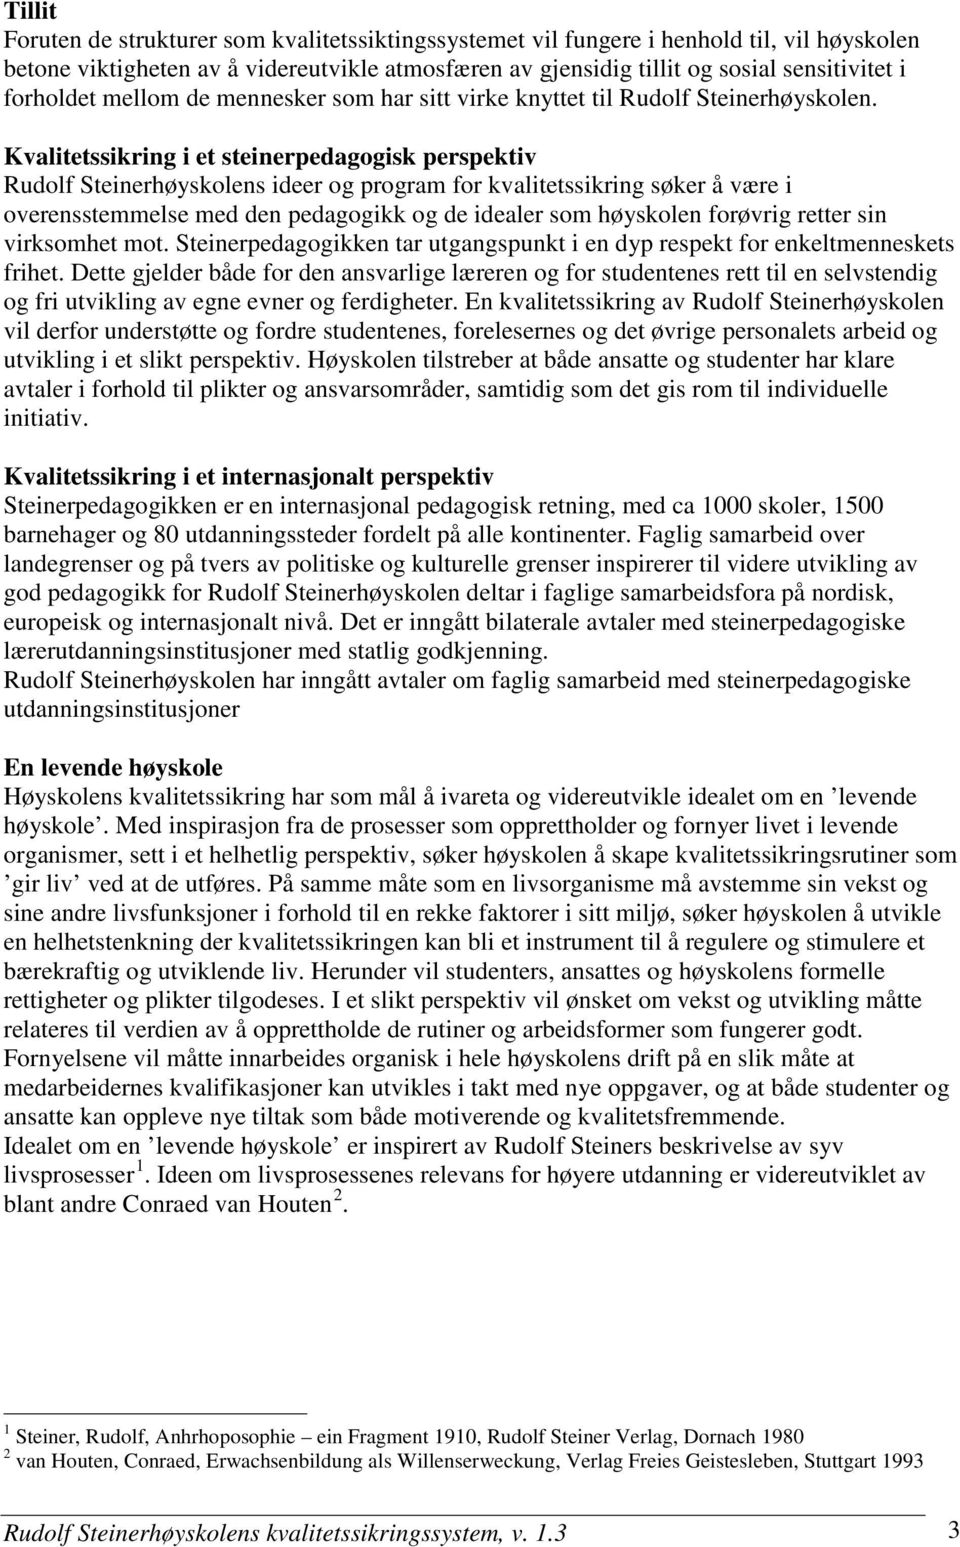 Kvalitetssikring i et steinerpedagogisk perspektiv Rudolf Steinerhøyskolens ideer og program for kvalitetssikring søker å være i overensstemmelse med den pedagogikk og de idealer som høyskolen